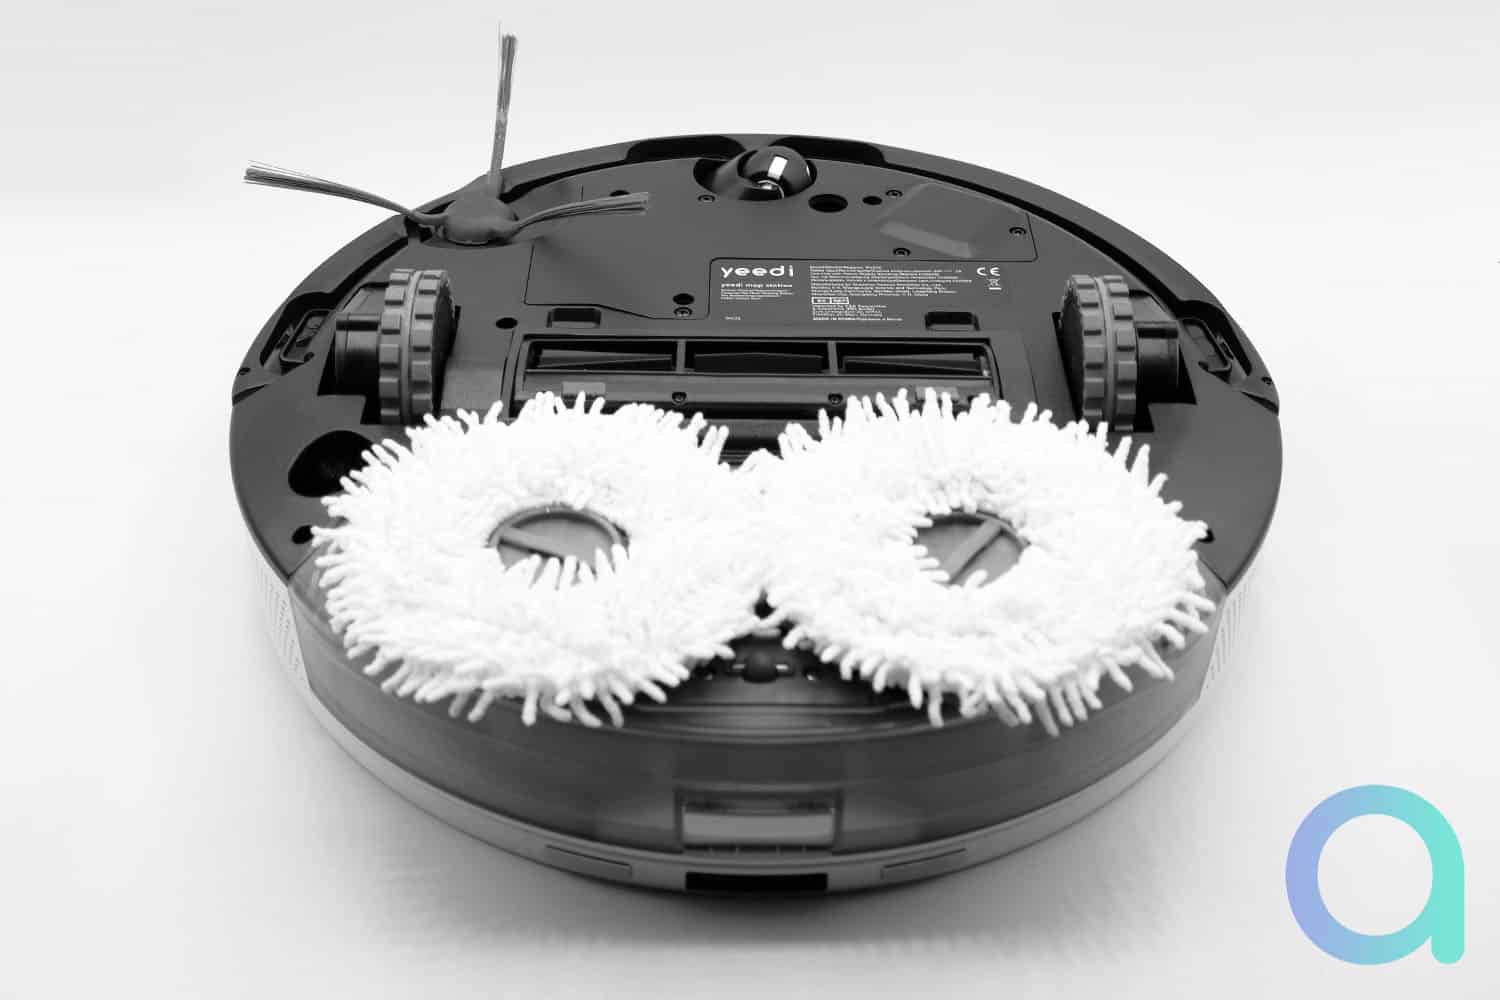 Test du Yeedi Mop Station, aspirateur robot laveur avec station - Tests et  Bons Plans pour Consommer Malin